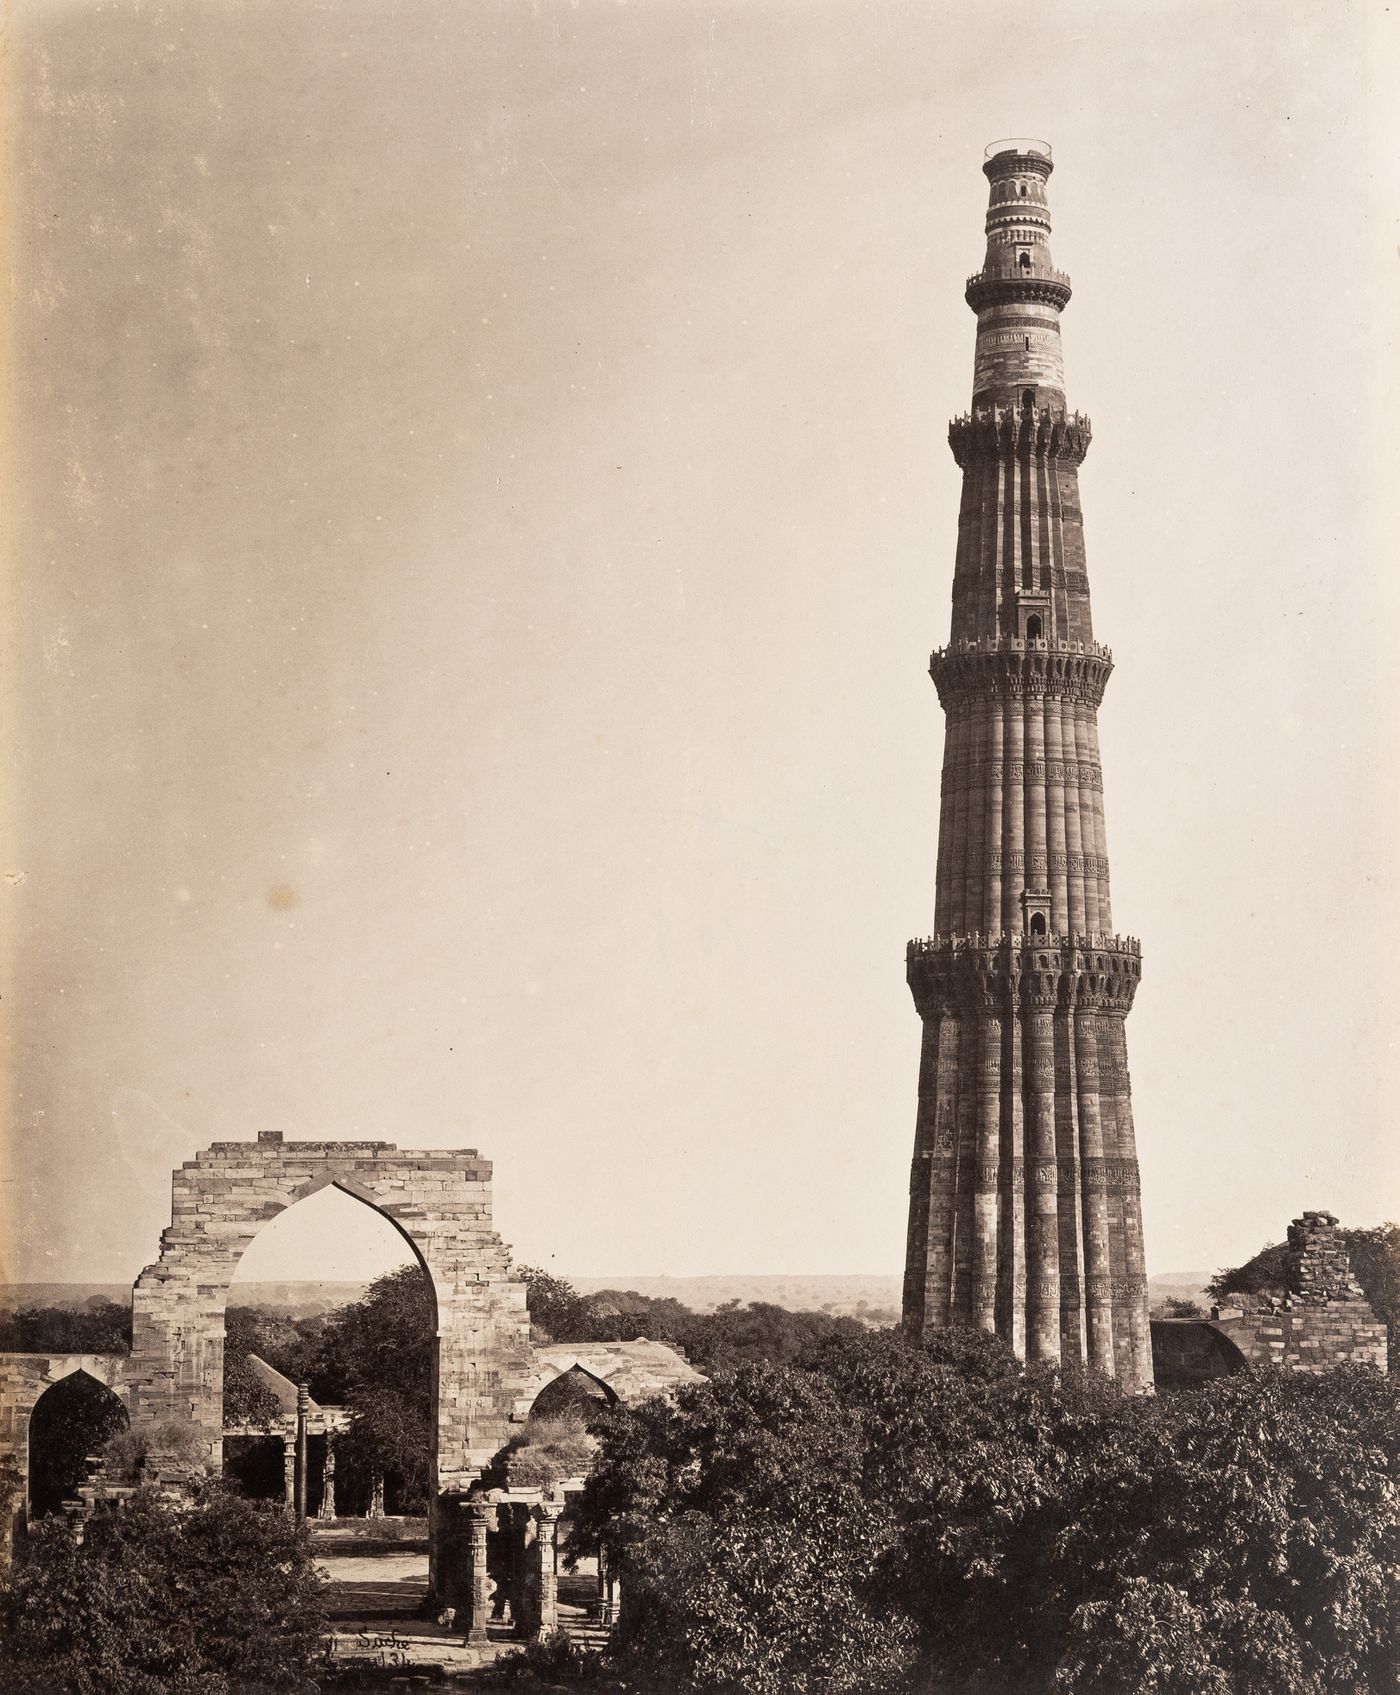 View of Qutb Minar and the arched screen façade of Quwwat al-Islam [Might of Islam] Mosque, Quwwat al-Islam Mosque Complex, Delhi, India